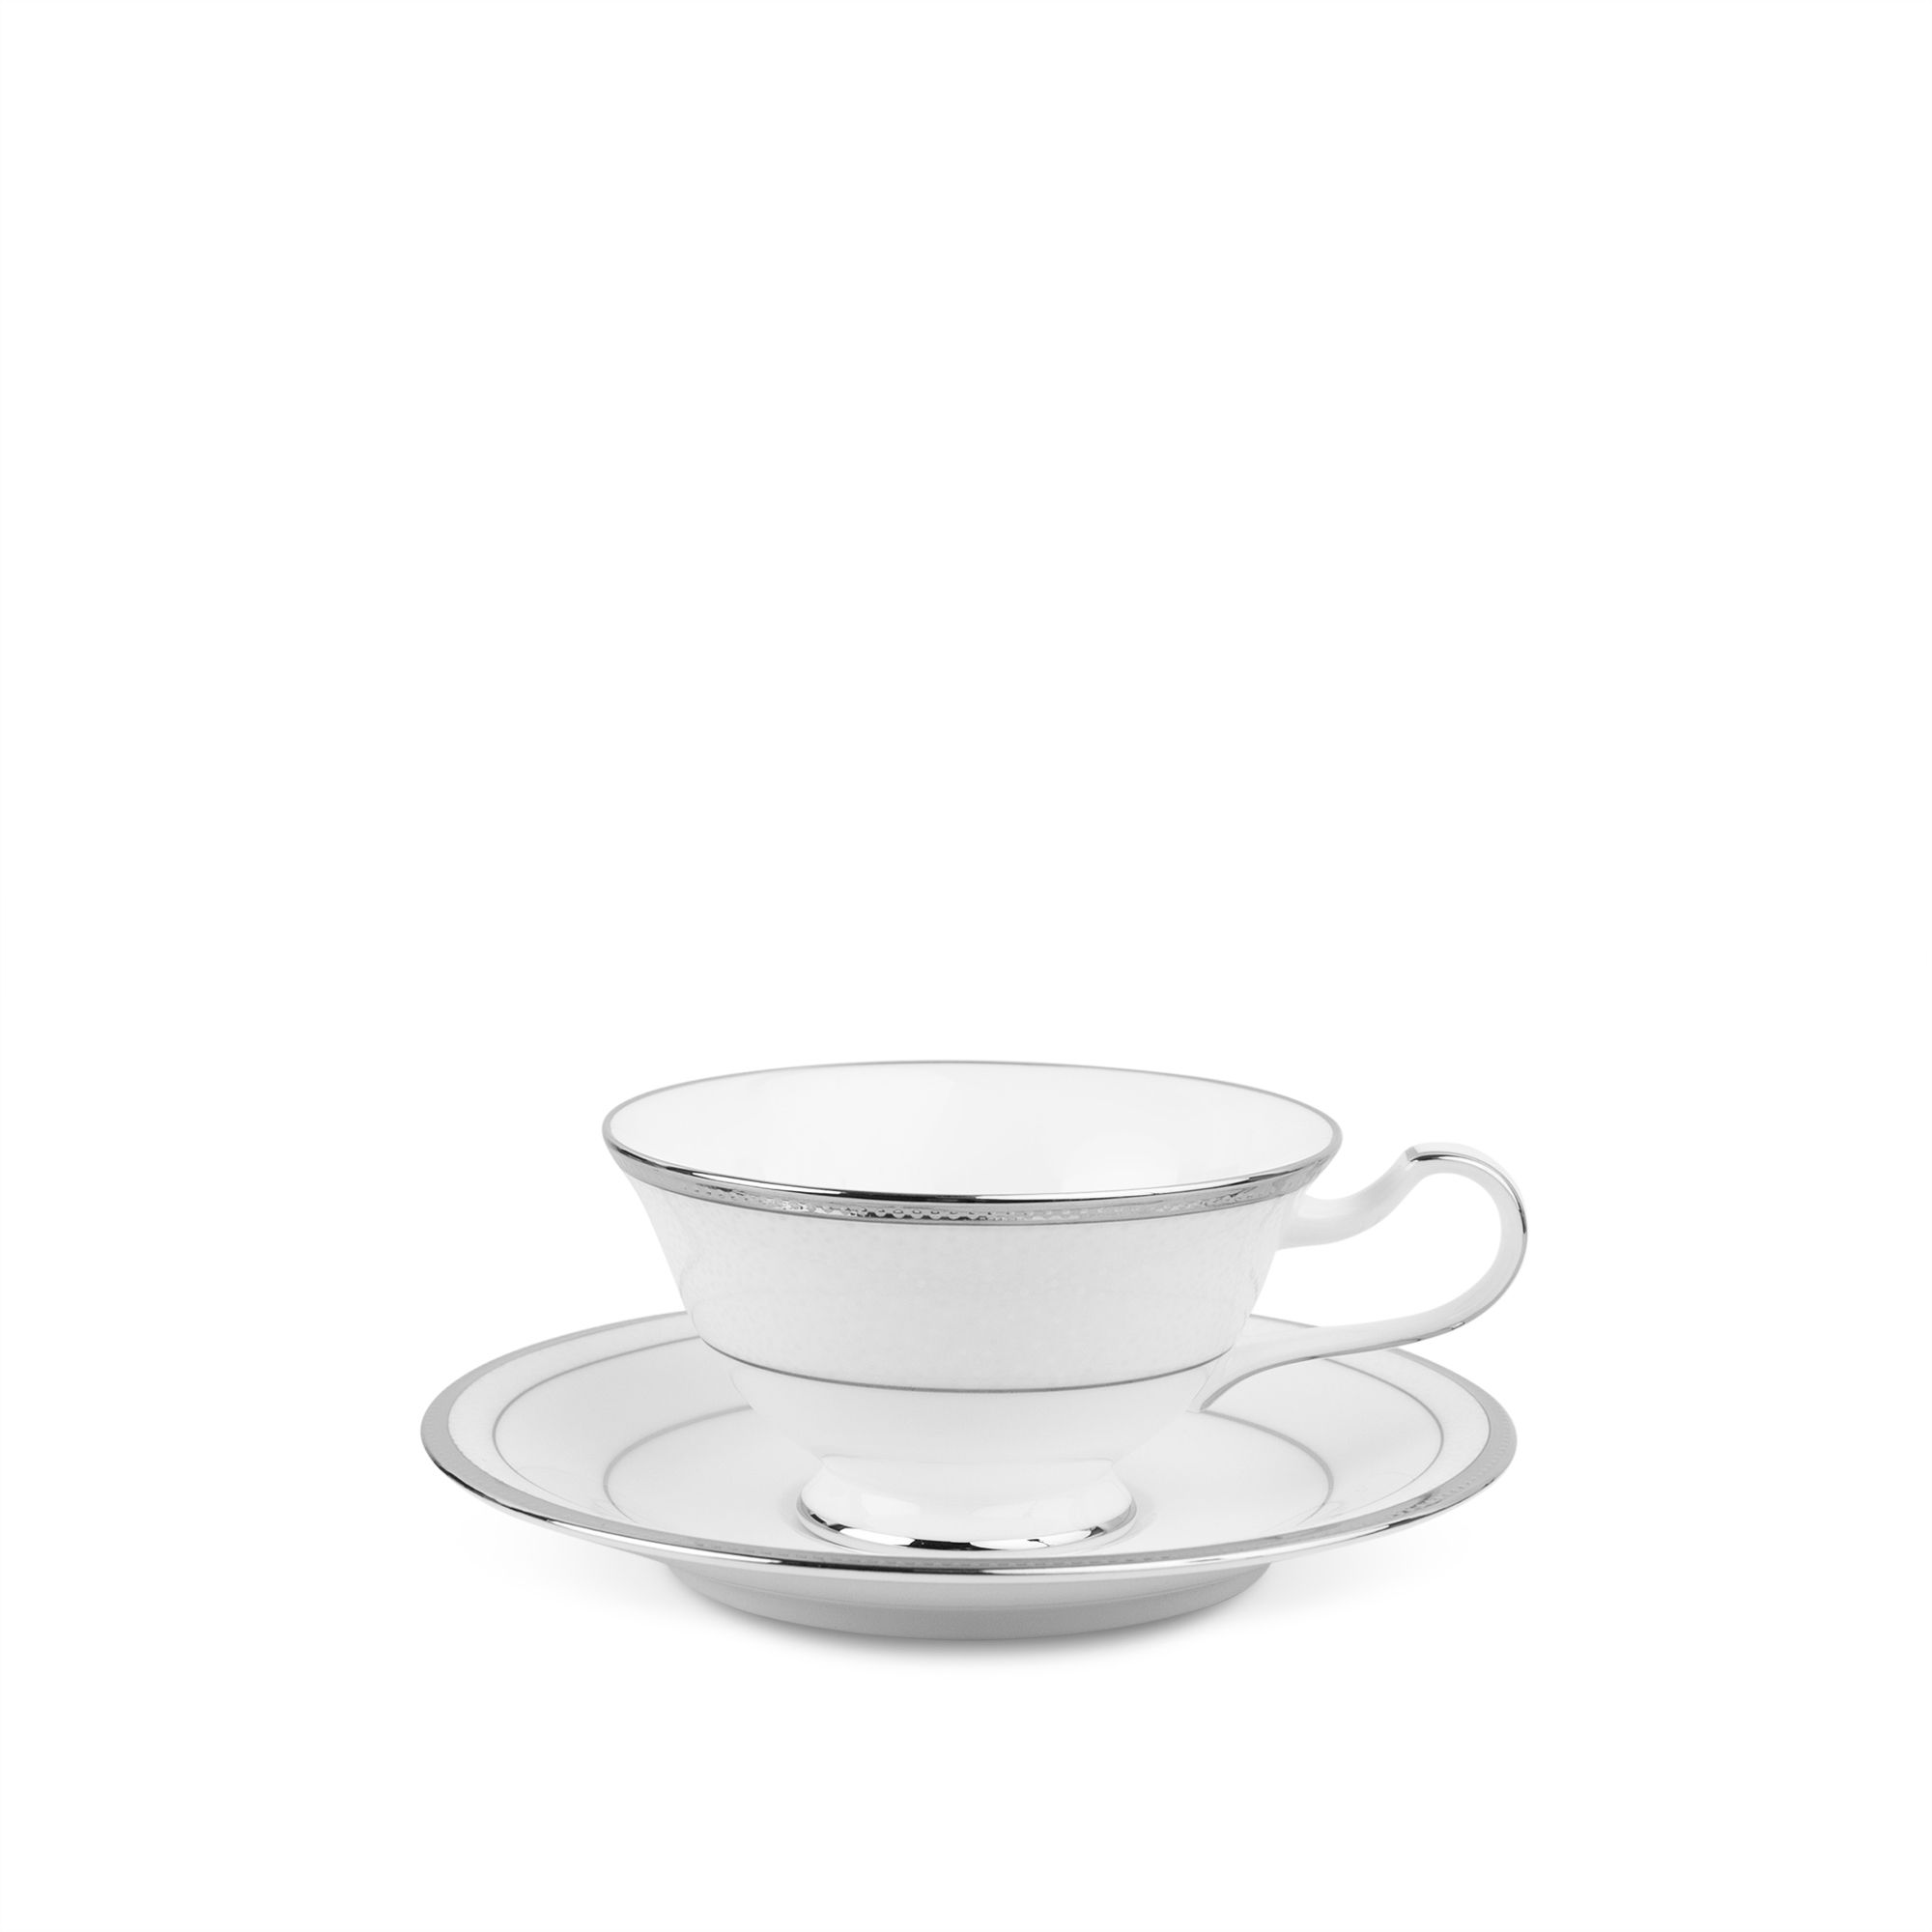  Chén trà (tách trà) dáng loe 220ml kèm đĩa lót | Champagne Pearls 4811J-T59587 